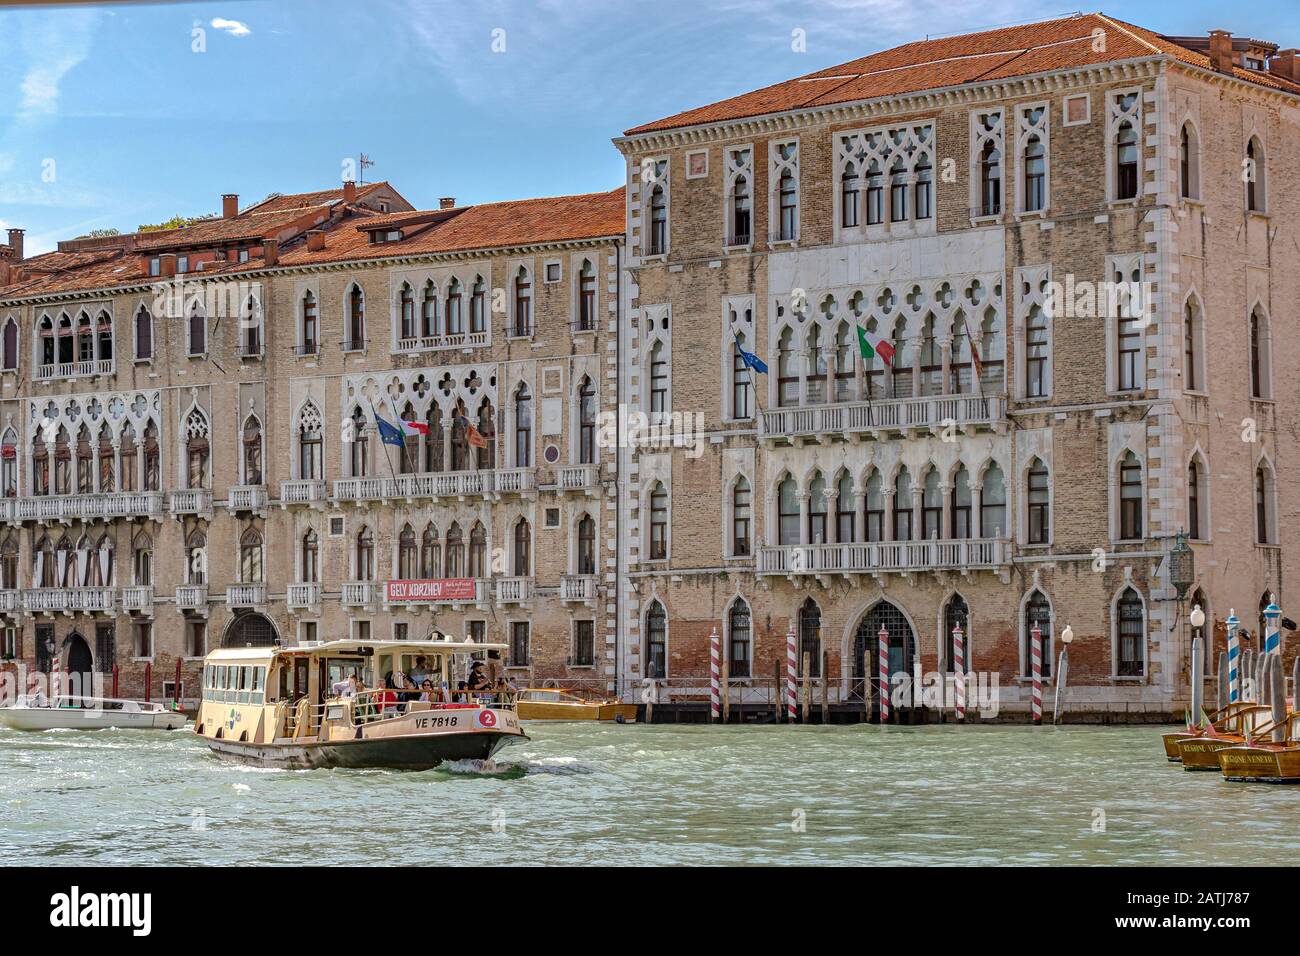 Eine Route Nr. 2 Vaporetto oder ein Wasserbus, der an Ca' Foscari und dem Palazzo Giustinian am Canal Grande in Venedig, Italien vorbeiführt Stockfoto